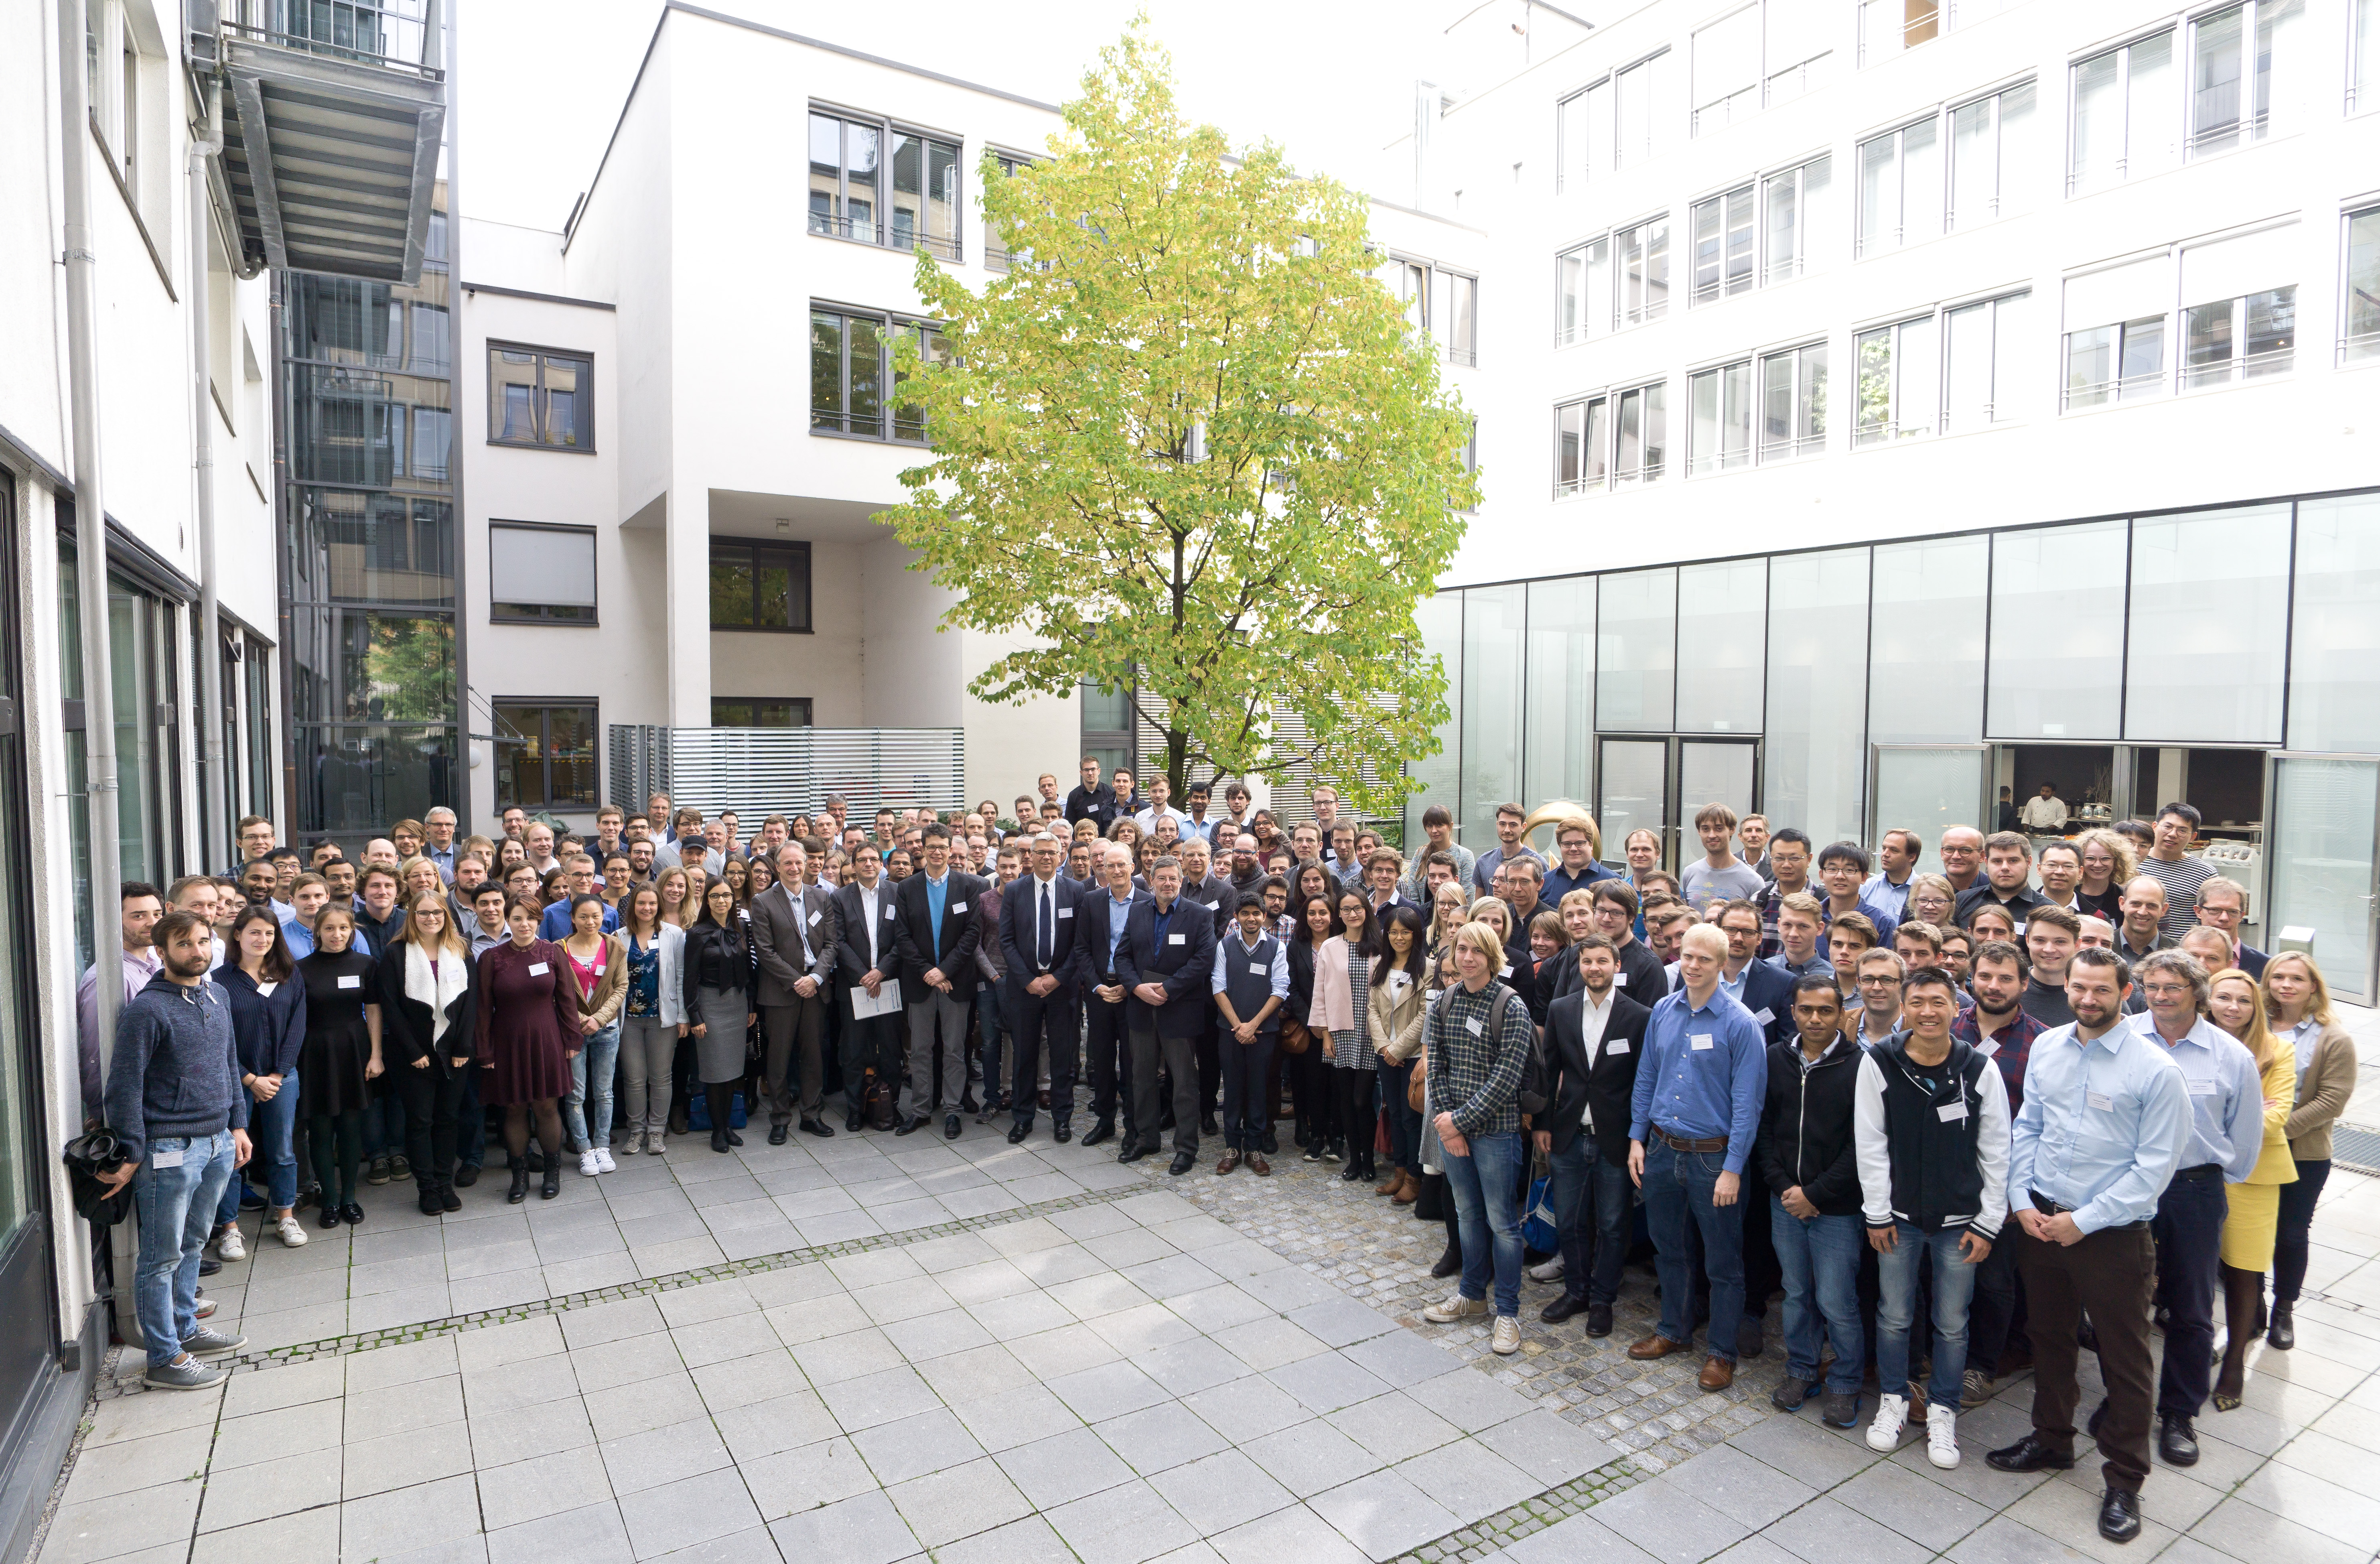 6. SolTech Konferenz in München, 4.-5. Oktober 2017